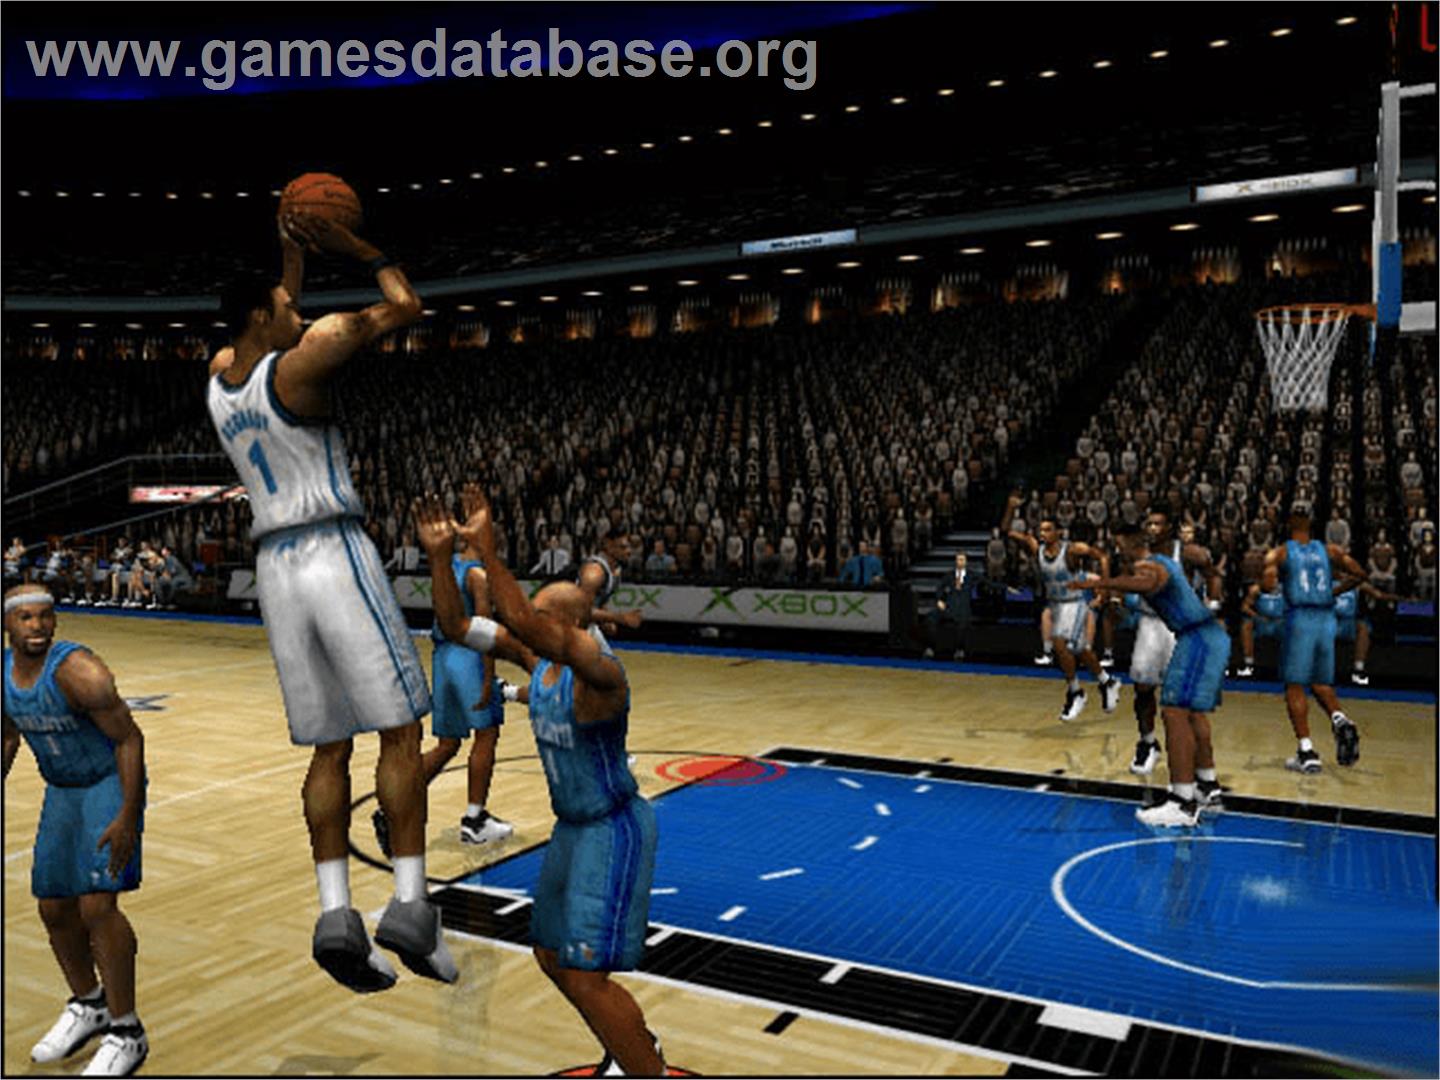 NBA Inside Drive 2002 - Microsoft Xbox - Artwork - In Game